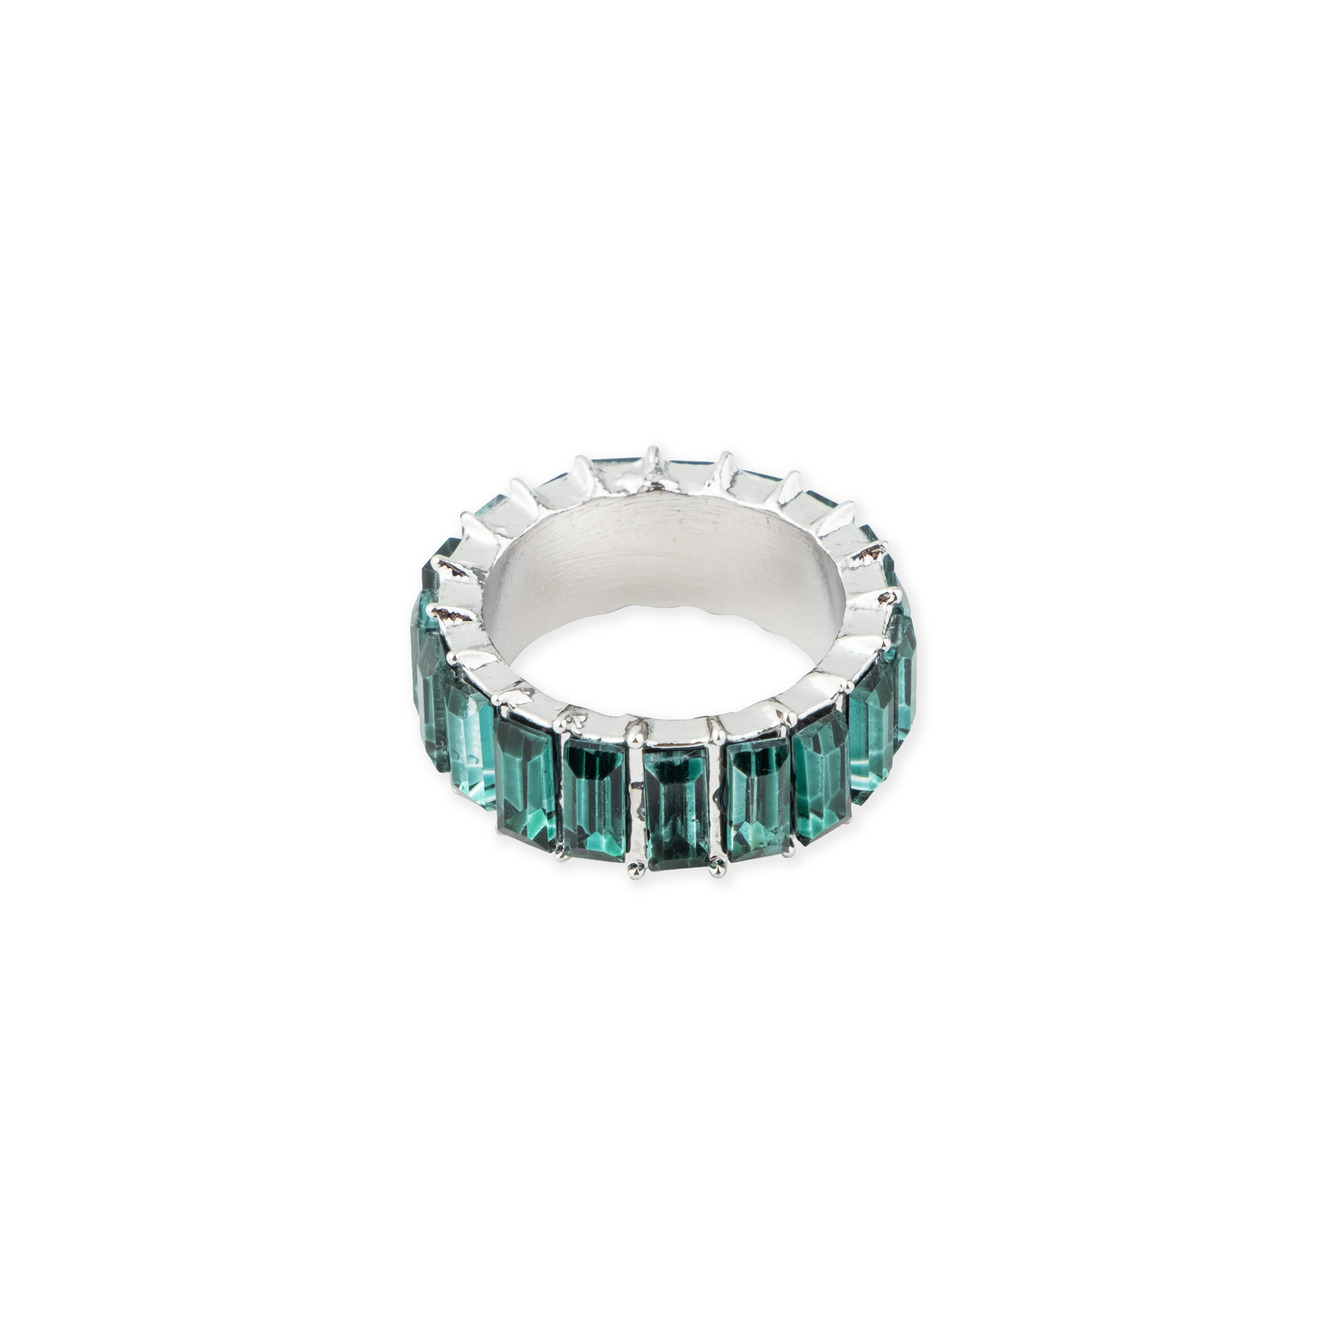 Herald Percy Серебристое кольцо с зелеными кристаллами herald percy серебристое колье с кристаллами в виде капель